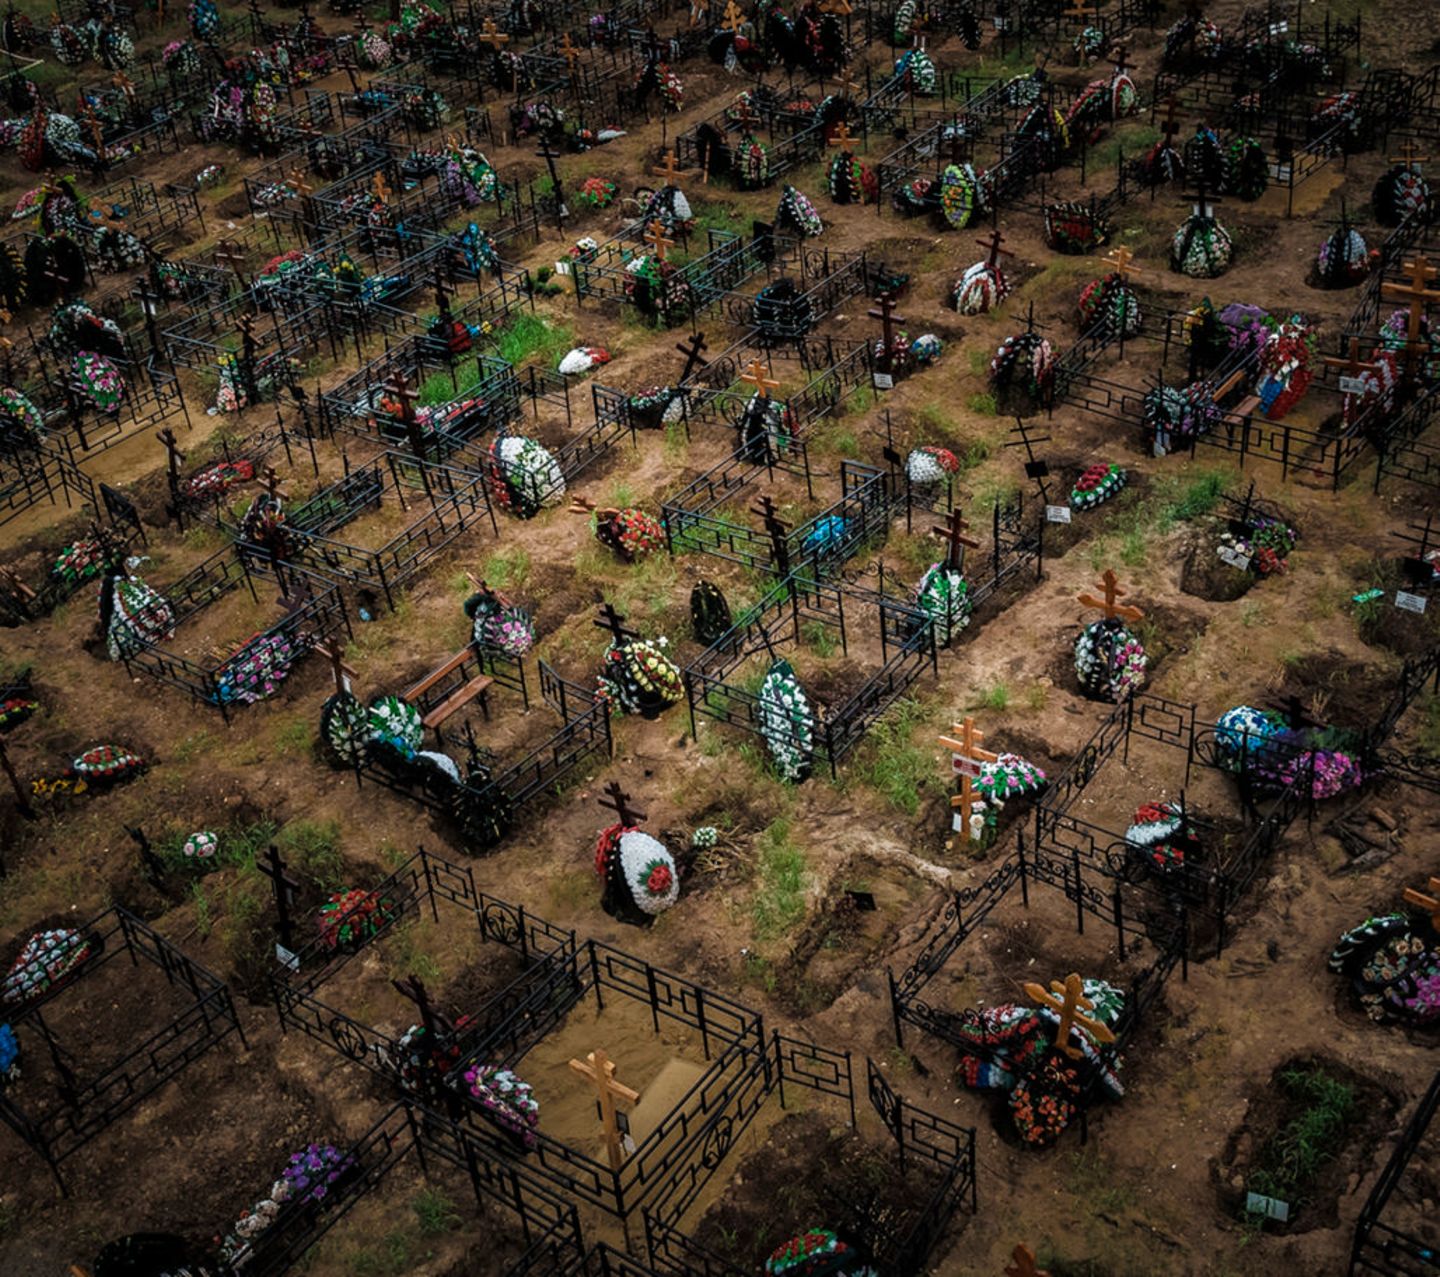 Preisgekrönte Fotografie: Drohnen-Bilder zeigen die Welt im Bann der Pandemie - Bild 7